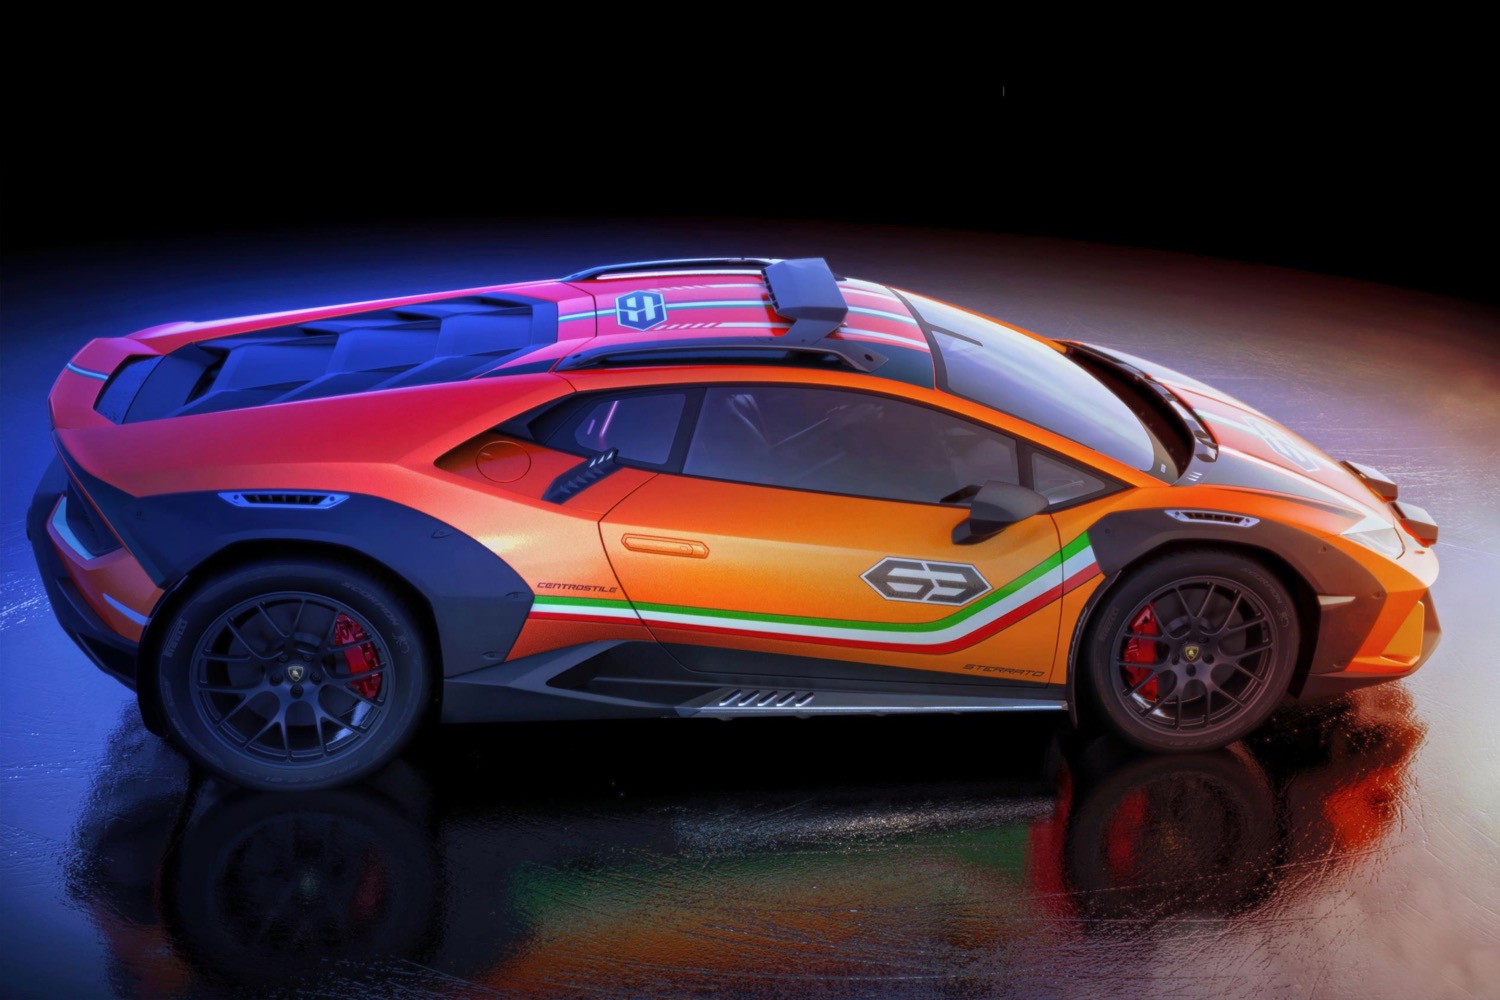 Lamborghini Huracán Sterrato concept